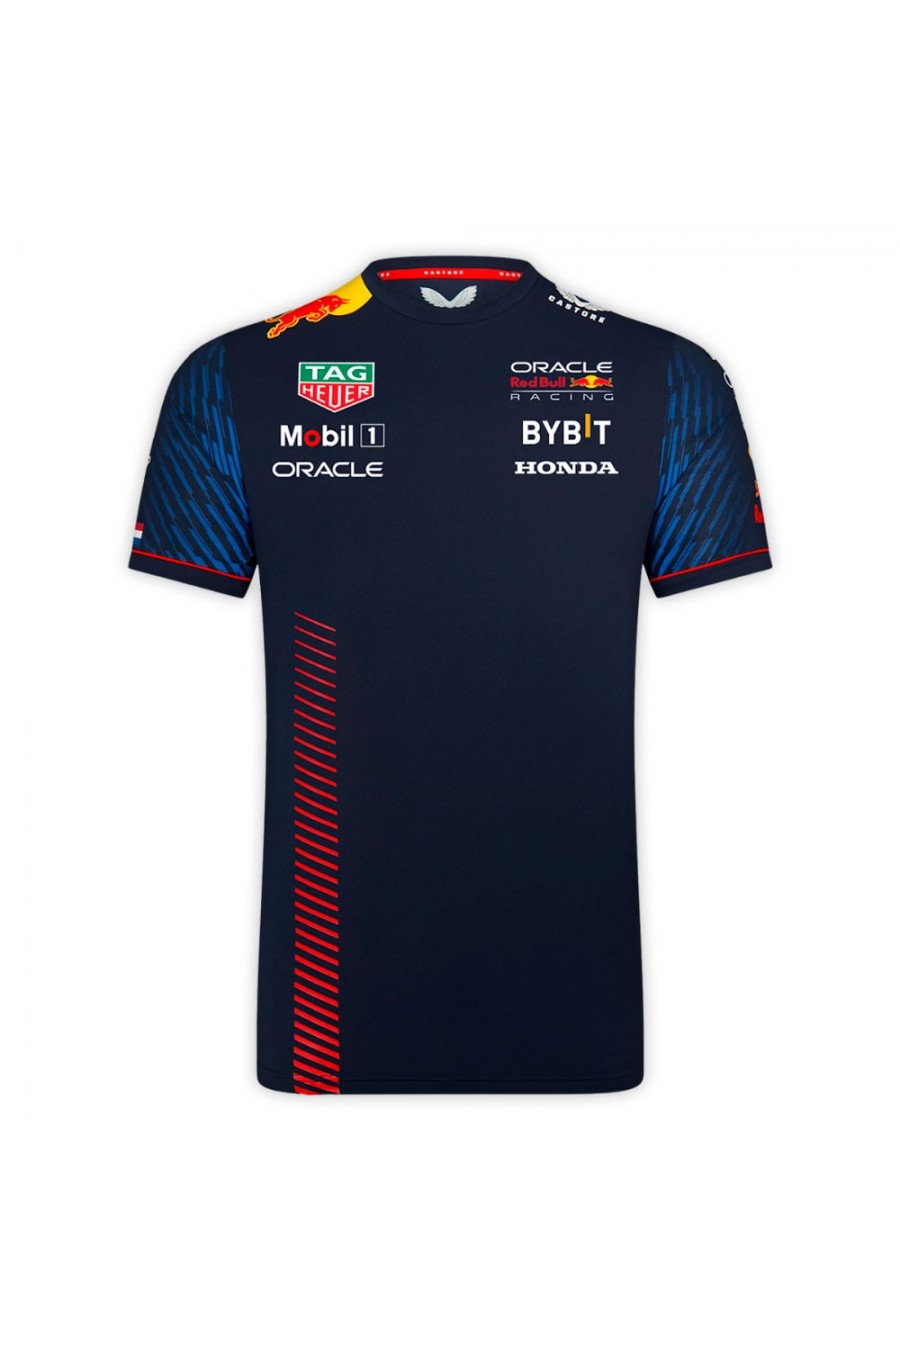 Camiseta Max Verstappen Red Bull F1